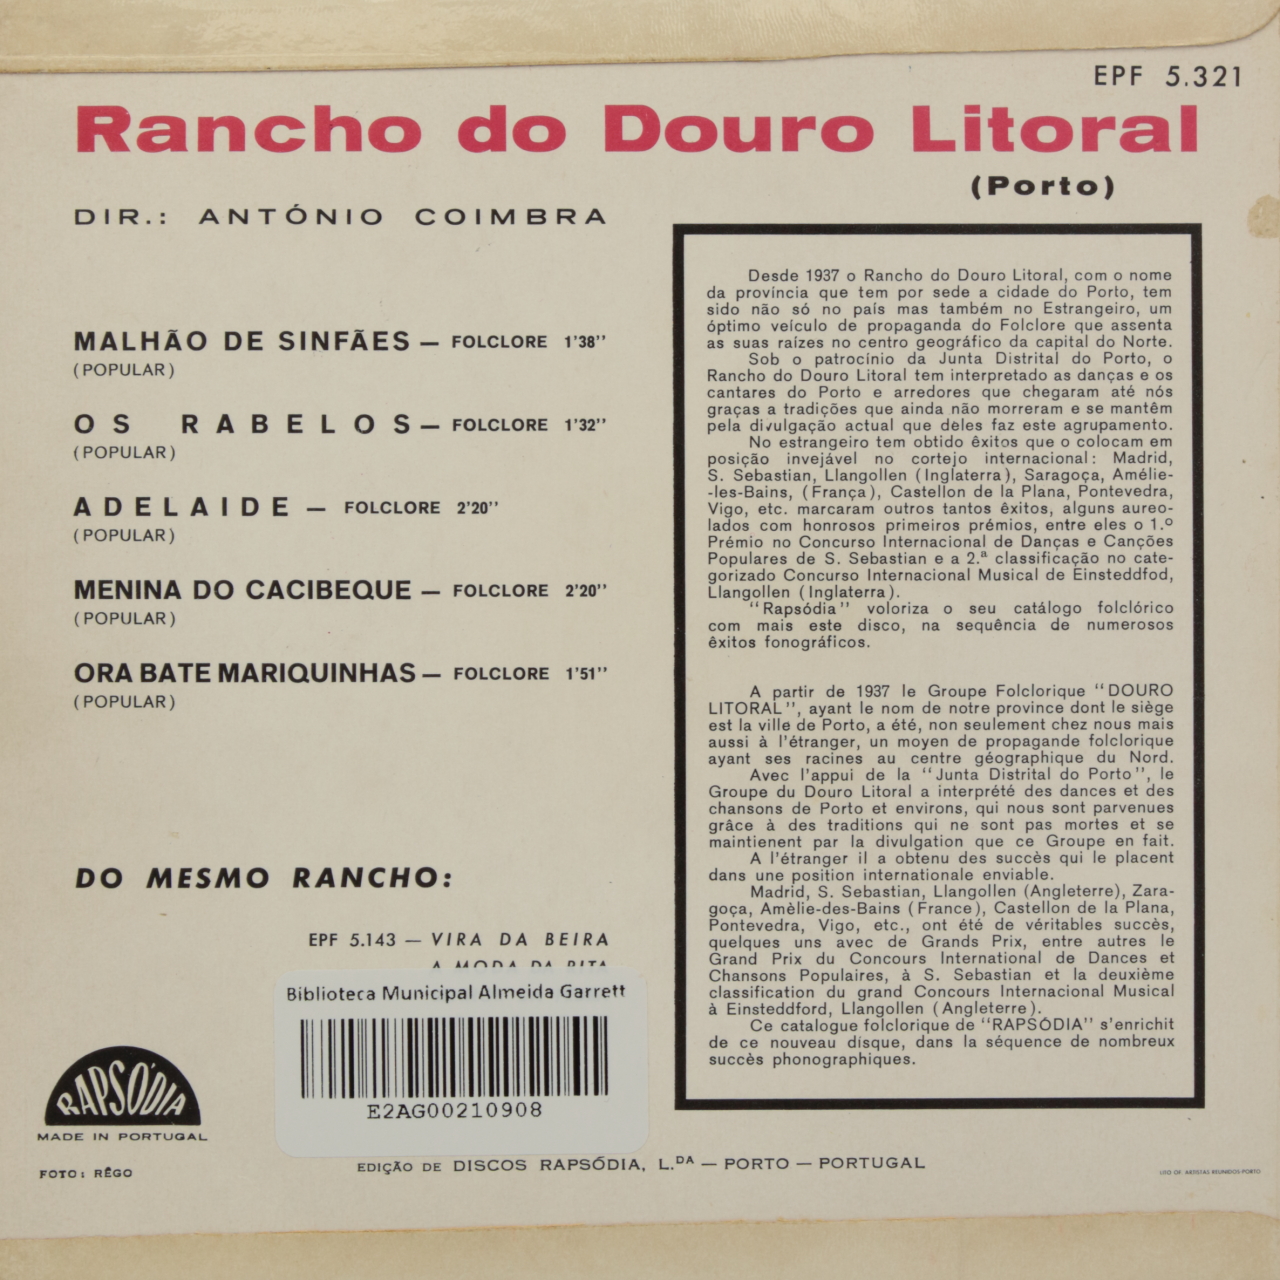 Rancho do Douro Litoral